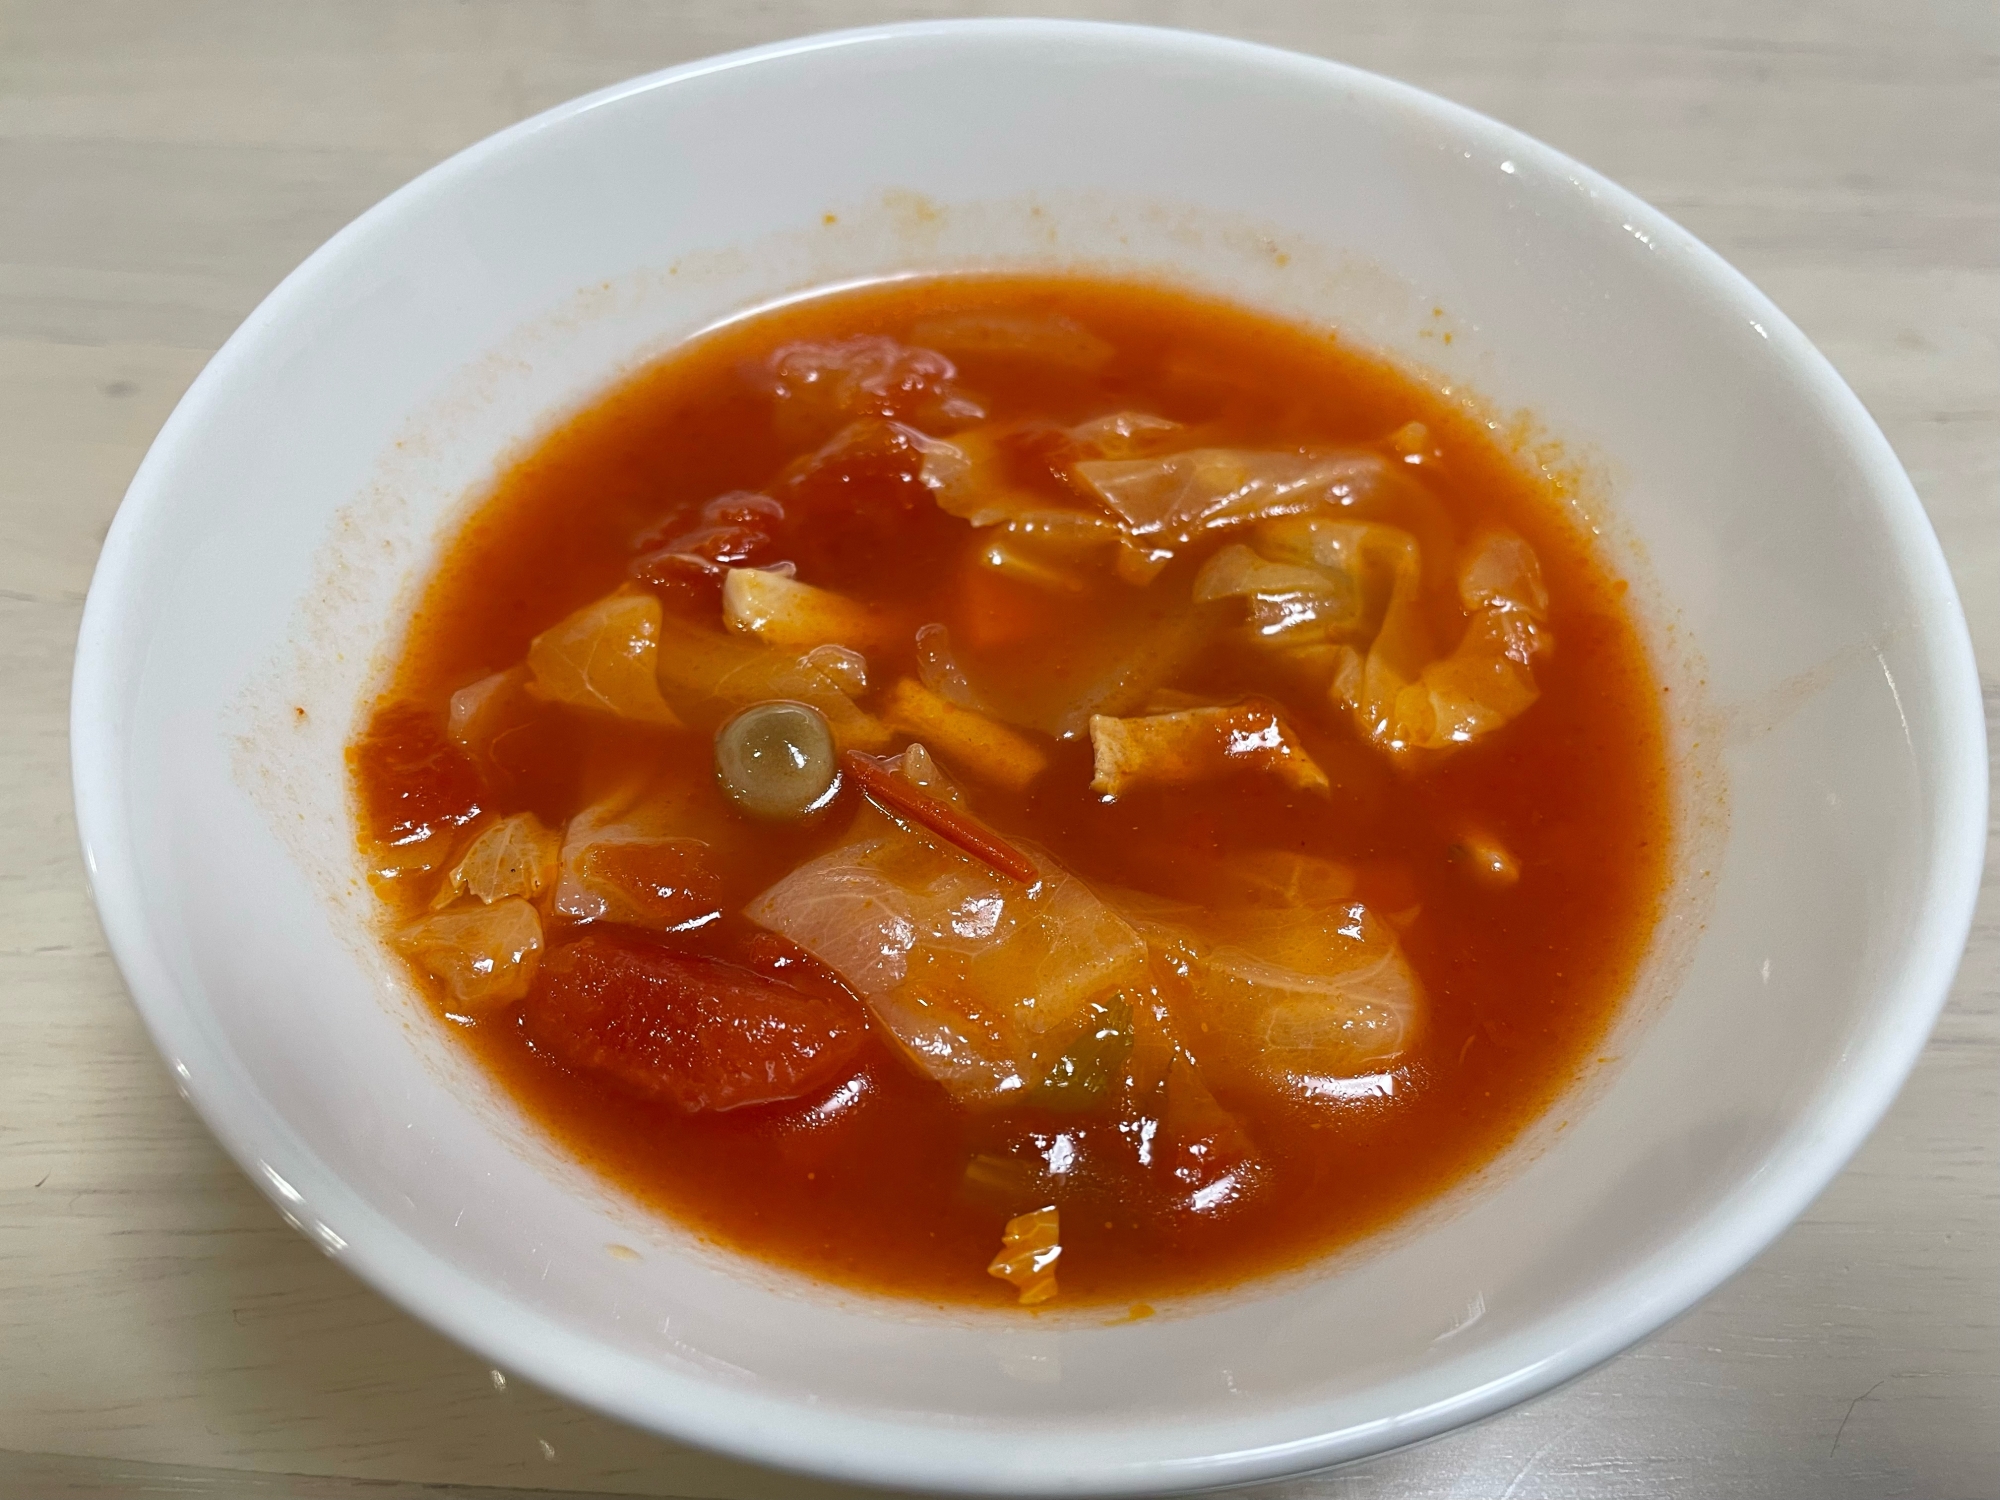 トマトとセロリの野菜スープ